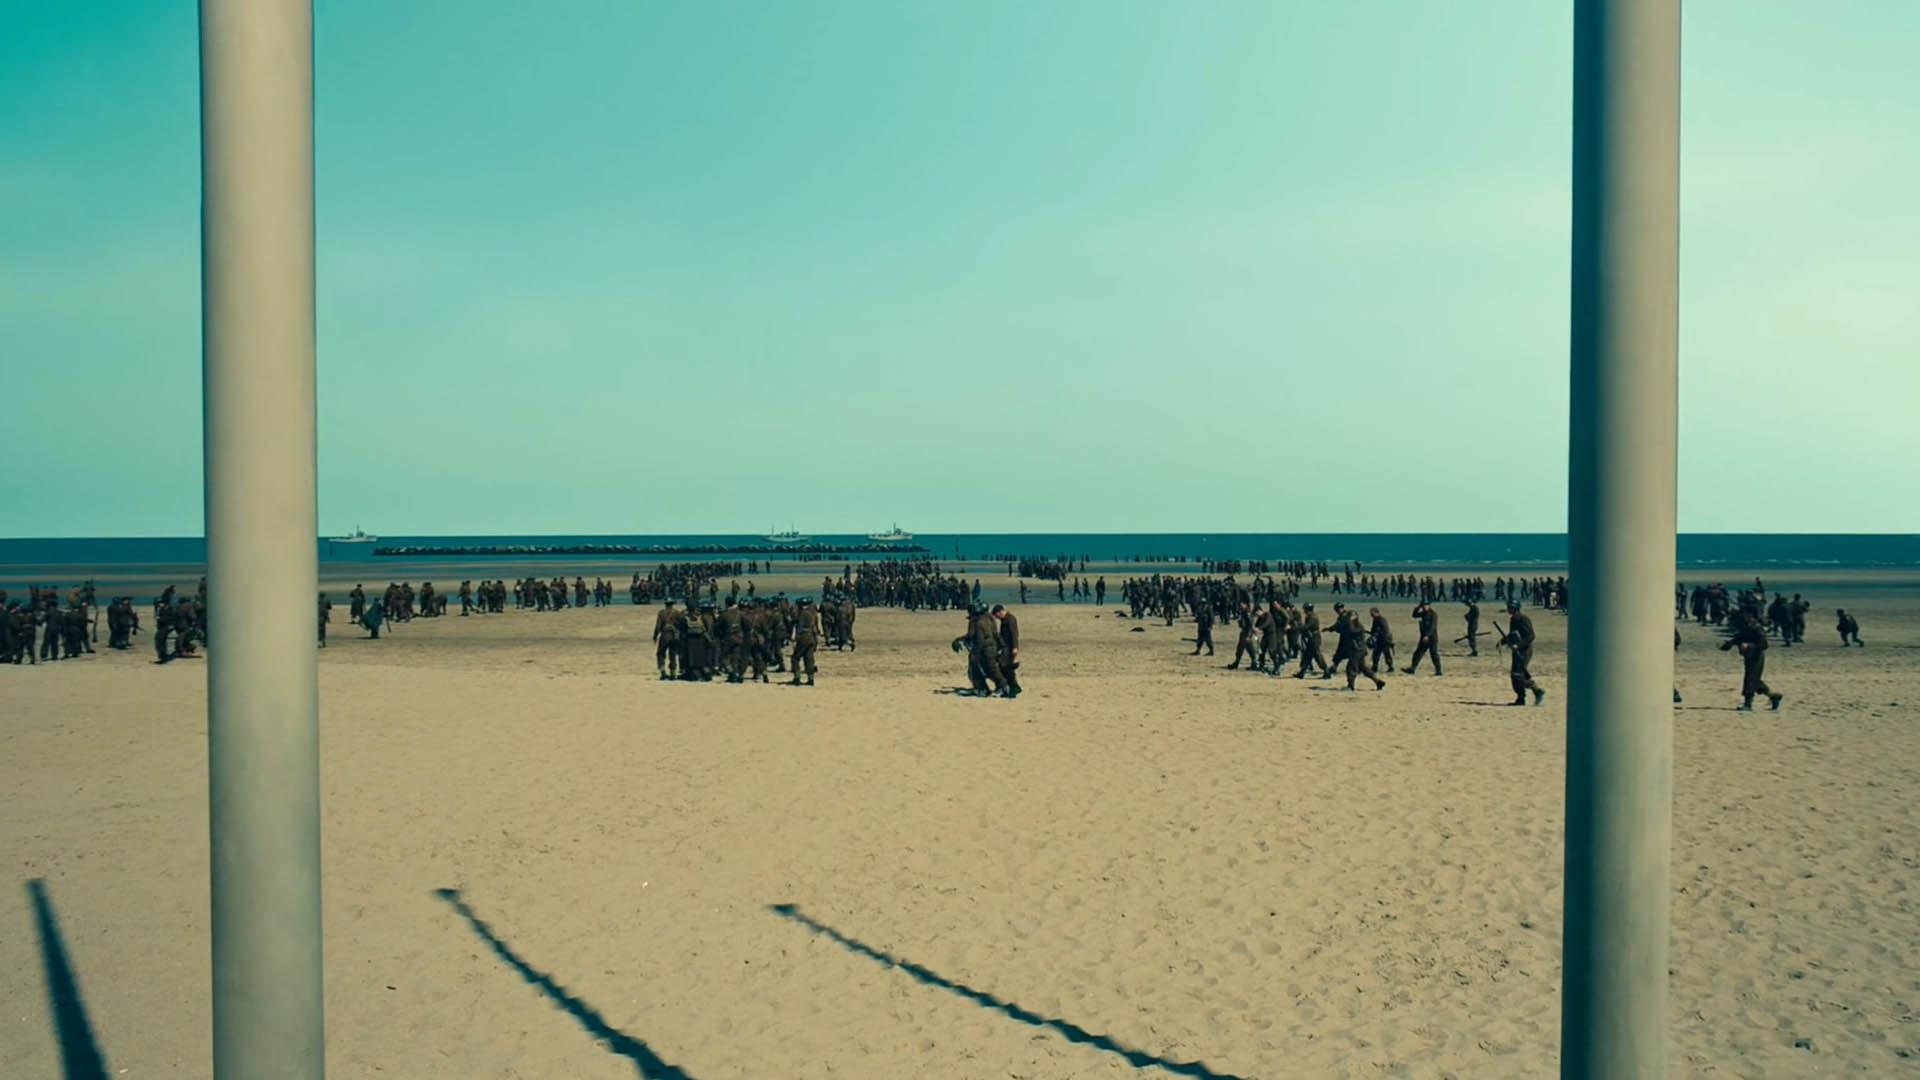 تصویری از میله‌های پرچم در ساحل دانکرک در فیلم Dunkirk